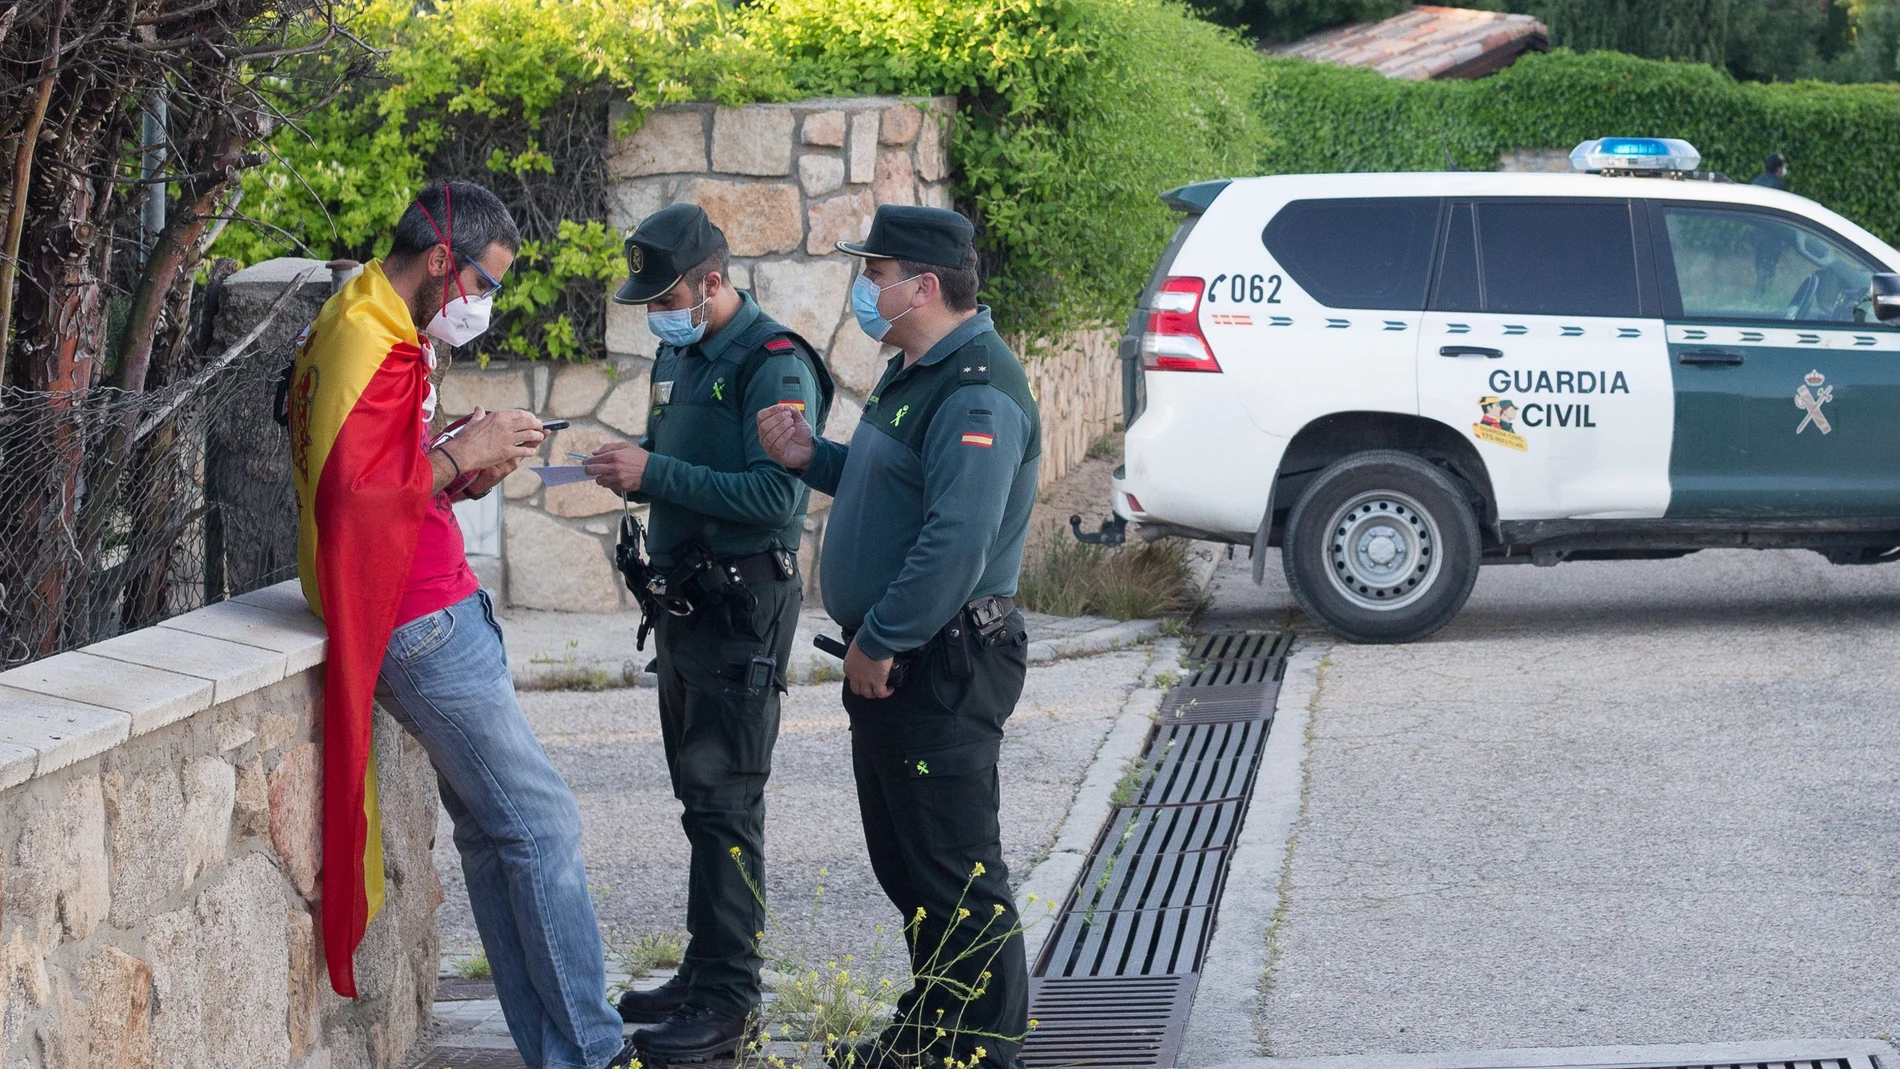 La Guardia Civil identifica a una persona arropada con una bandera de España cerca de la vivienda del vicepresidente Pablo Iglesias.